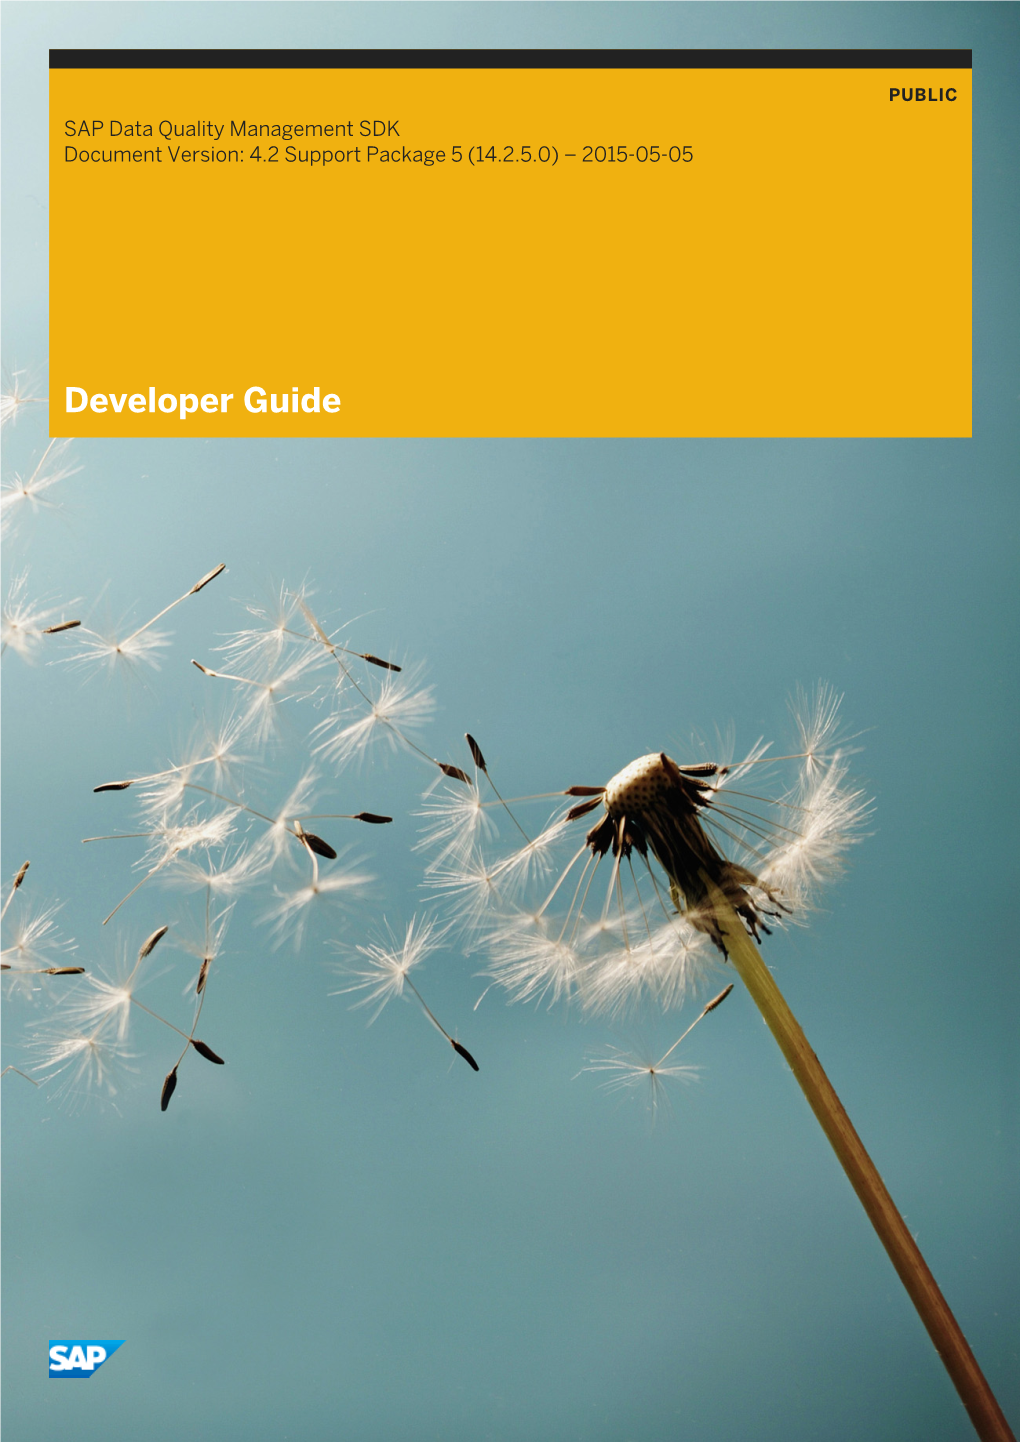 Developer Guide Content